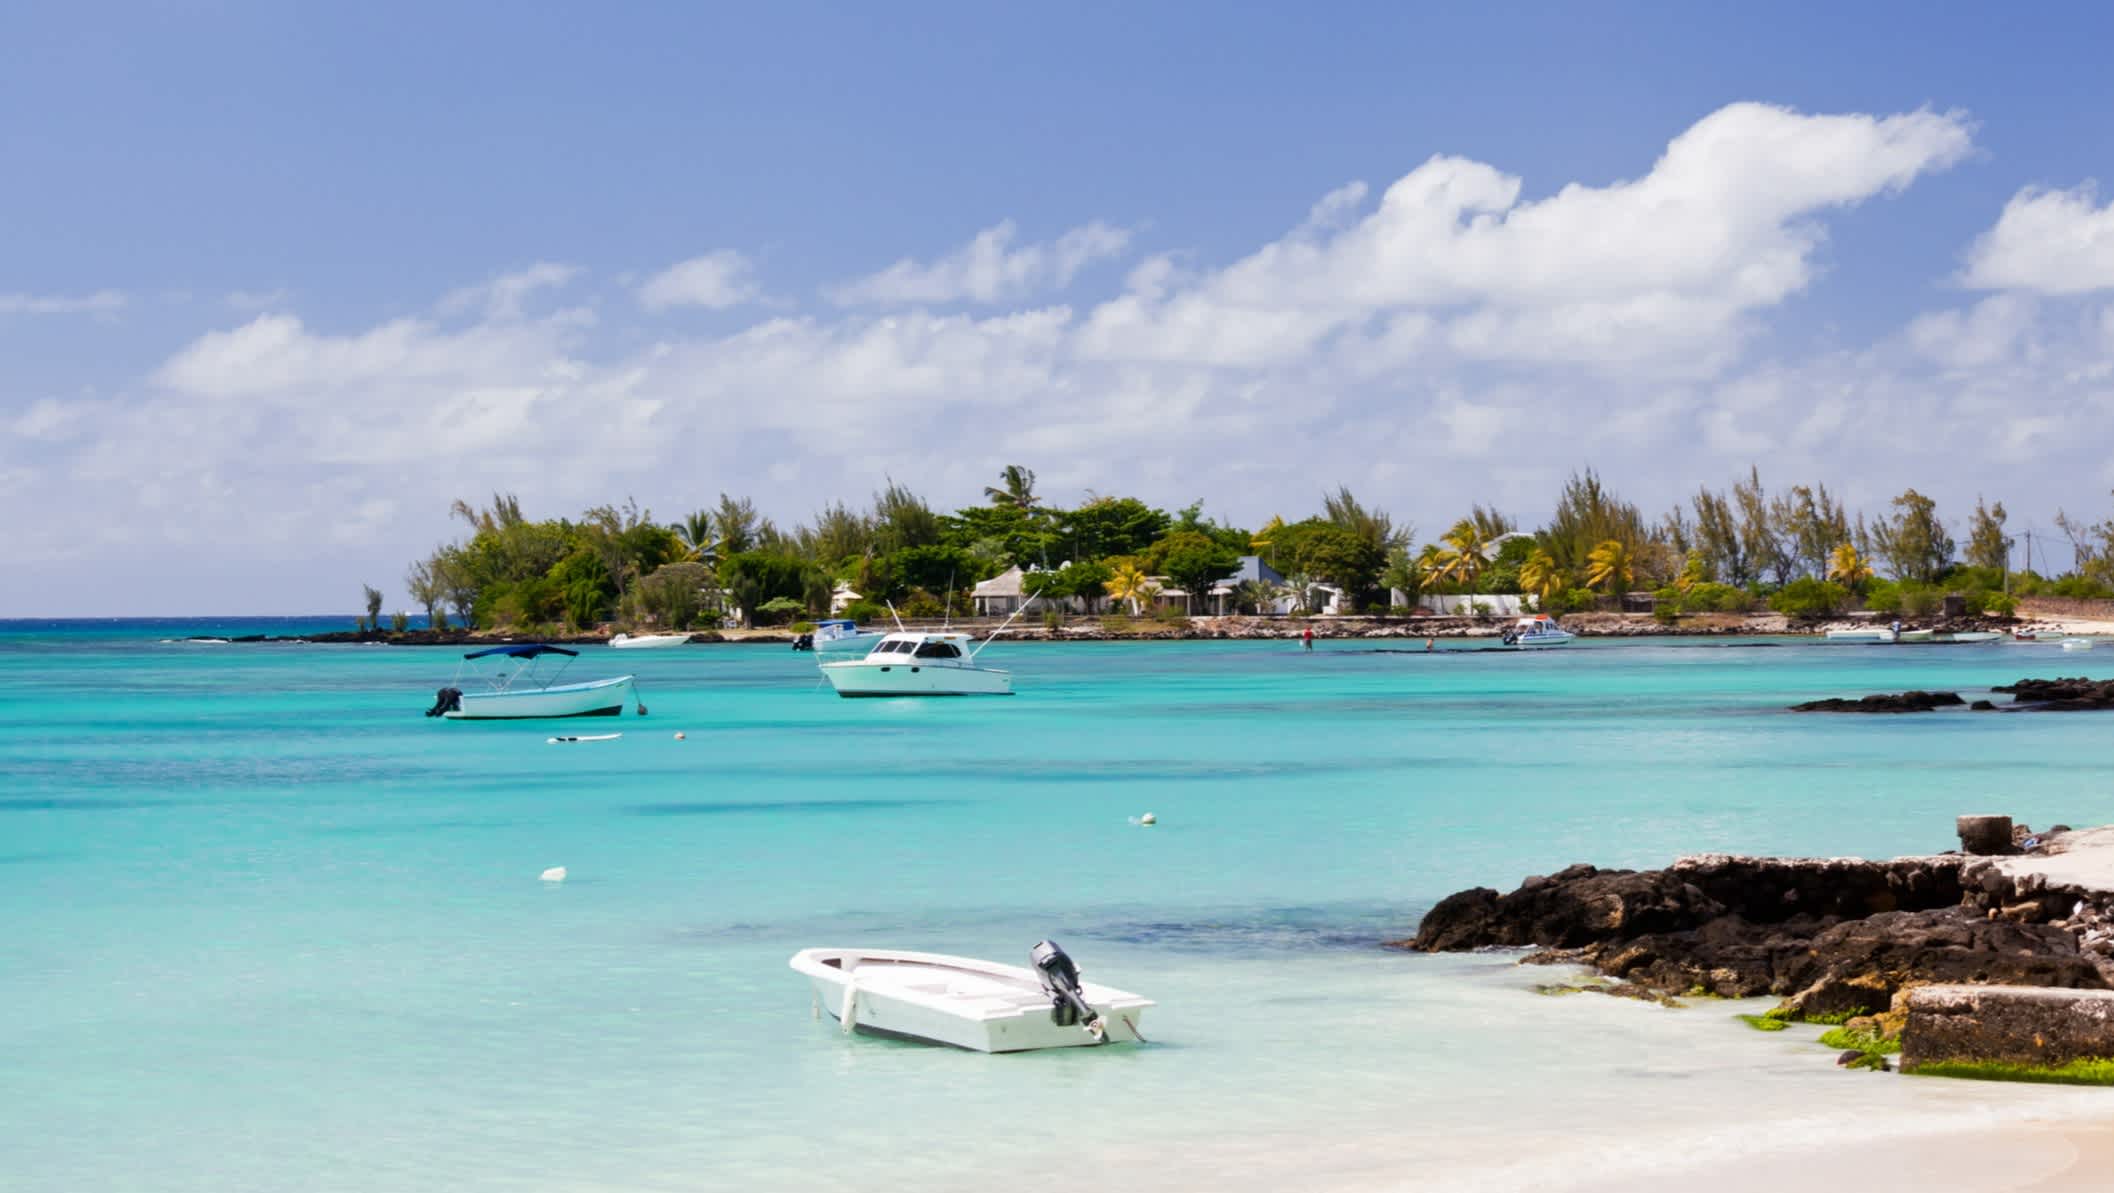 Bateaux sur l'eau turquoise au bord de la plage de sable blanc de Pereybere, Ile Maurice 